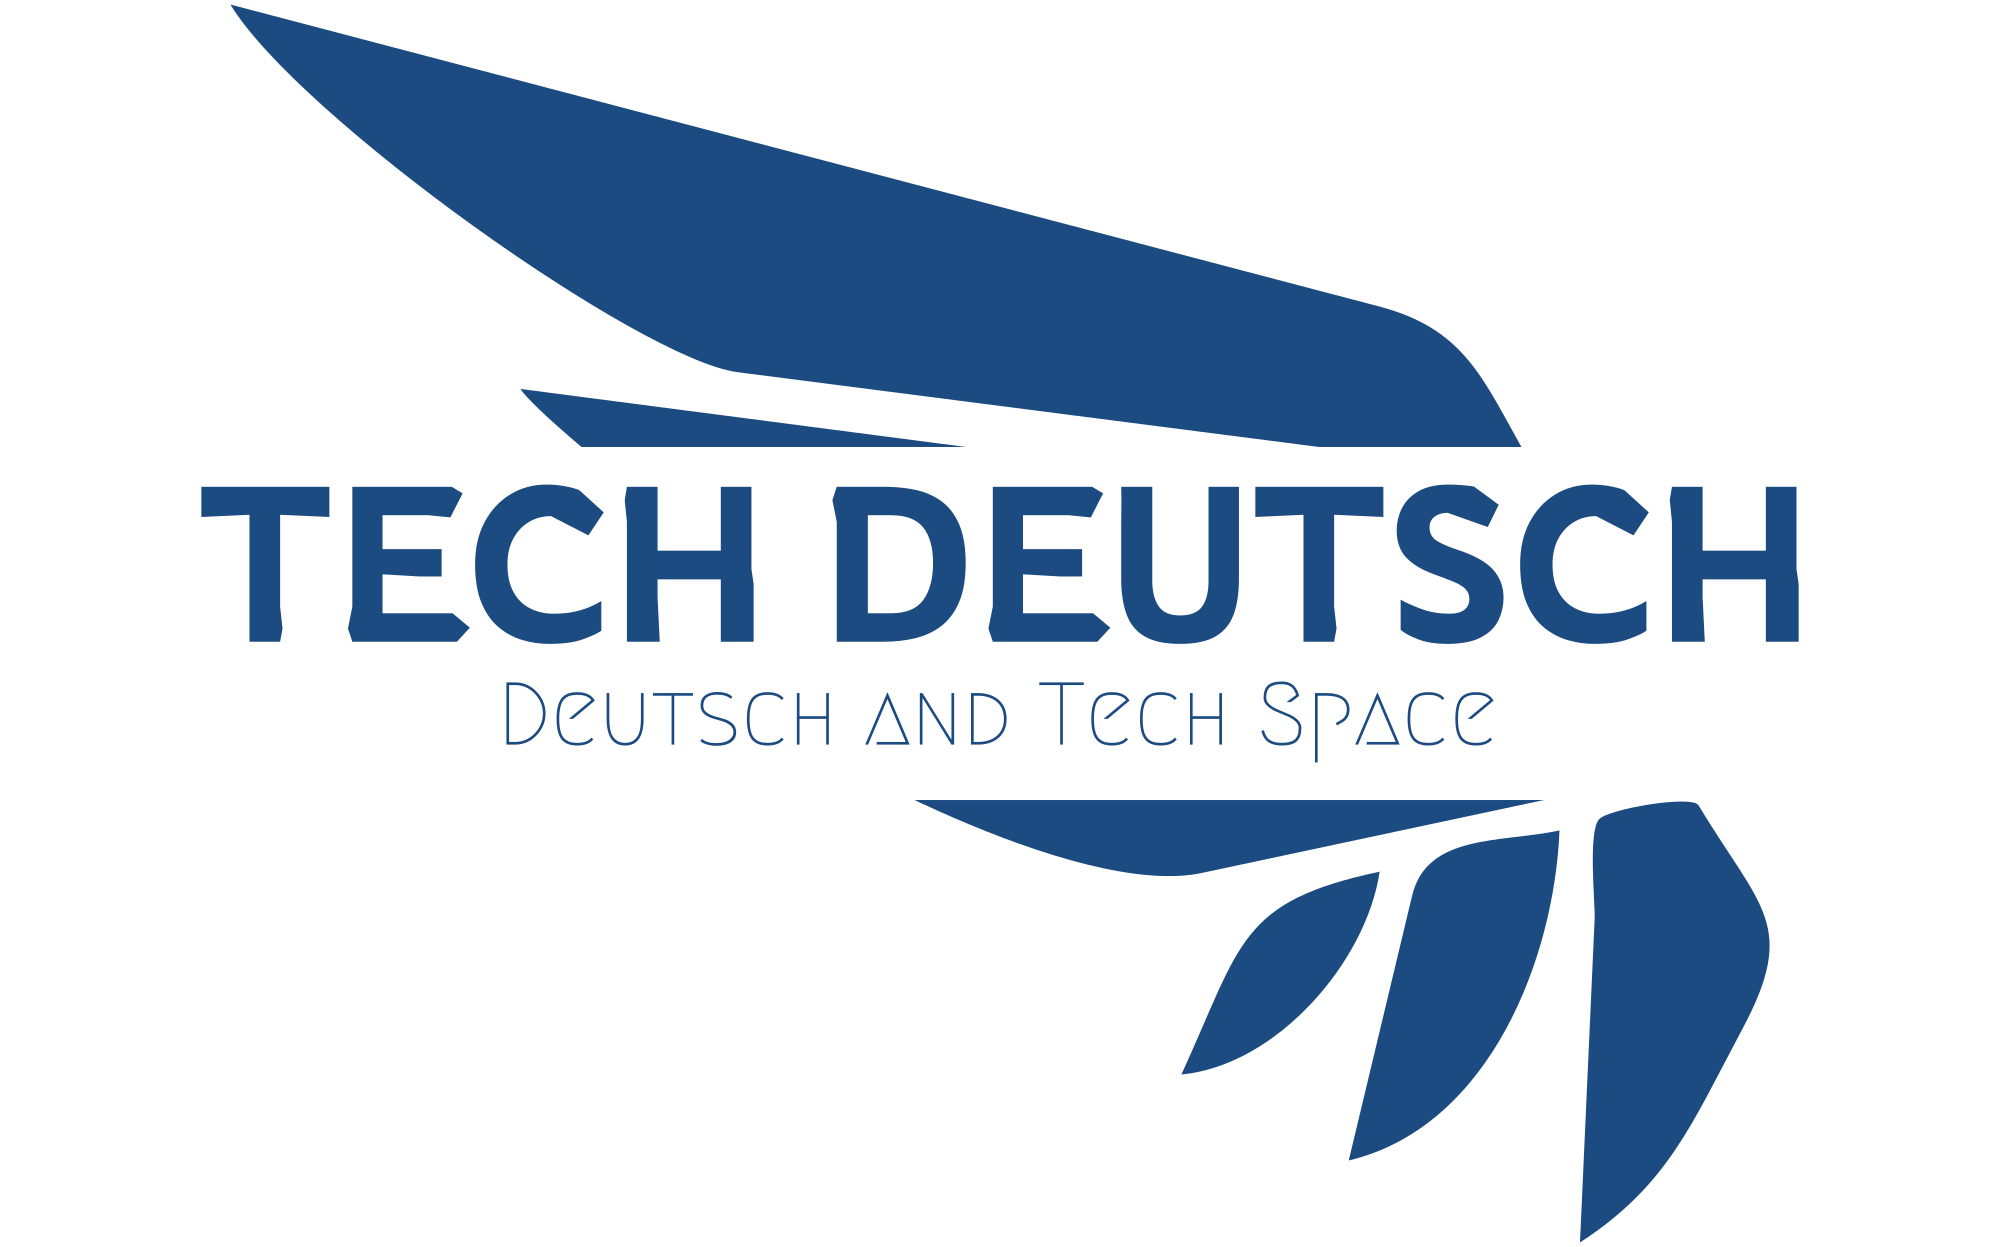 test.techdeutsch.com